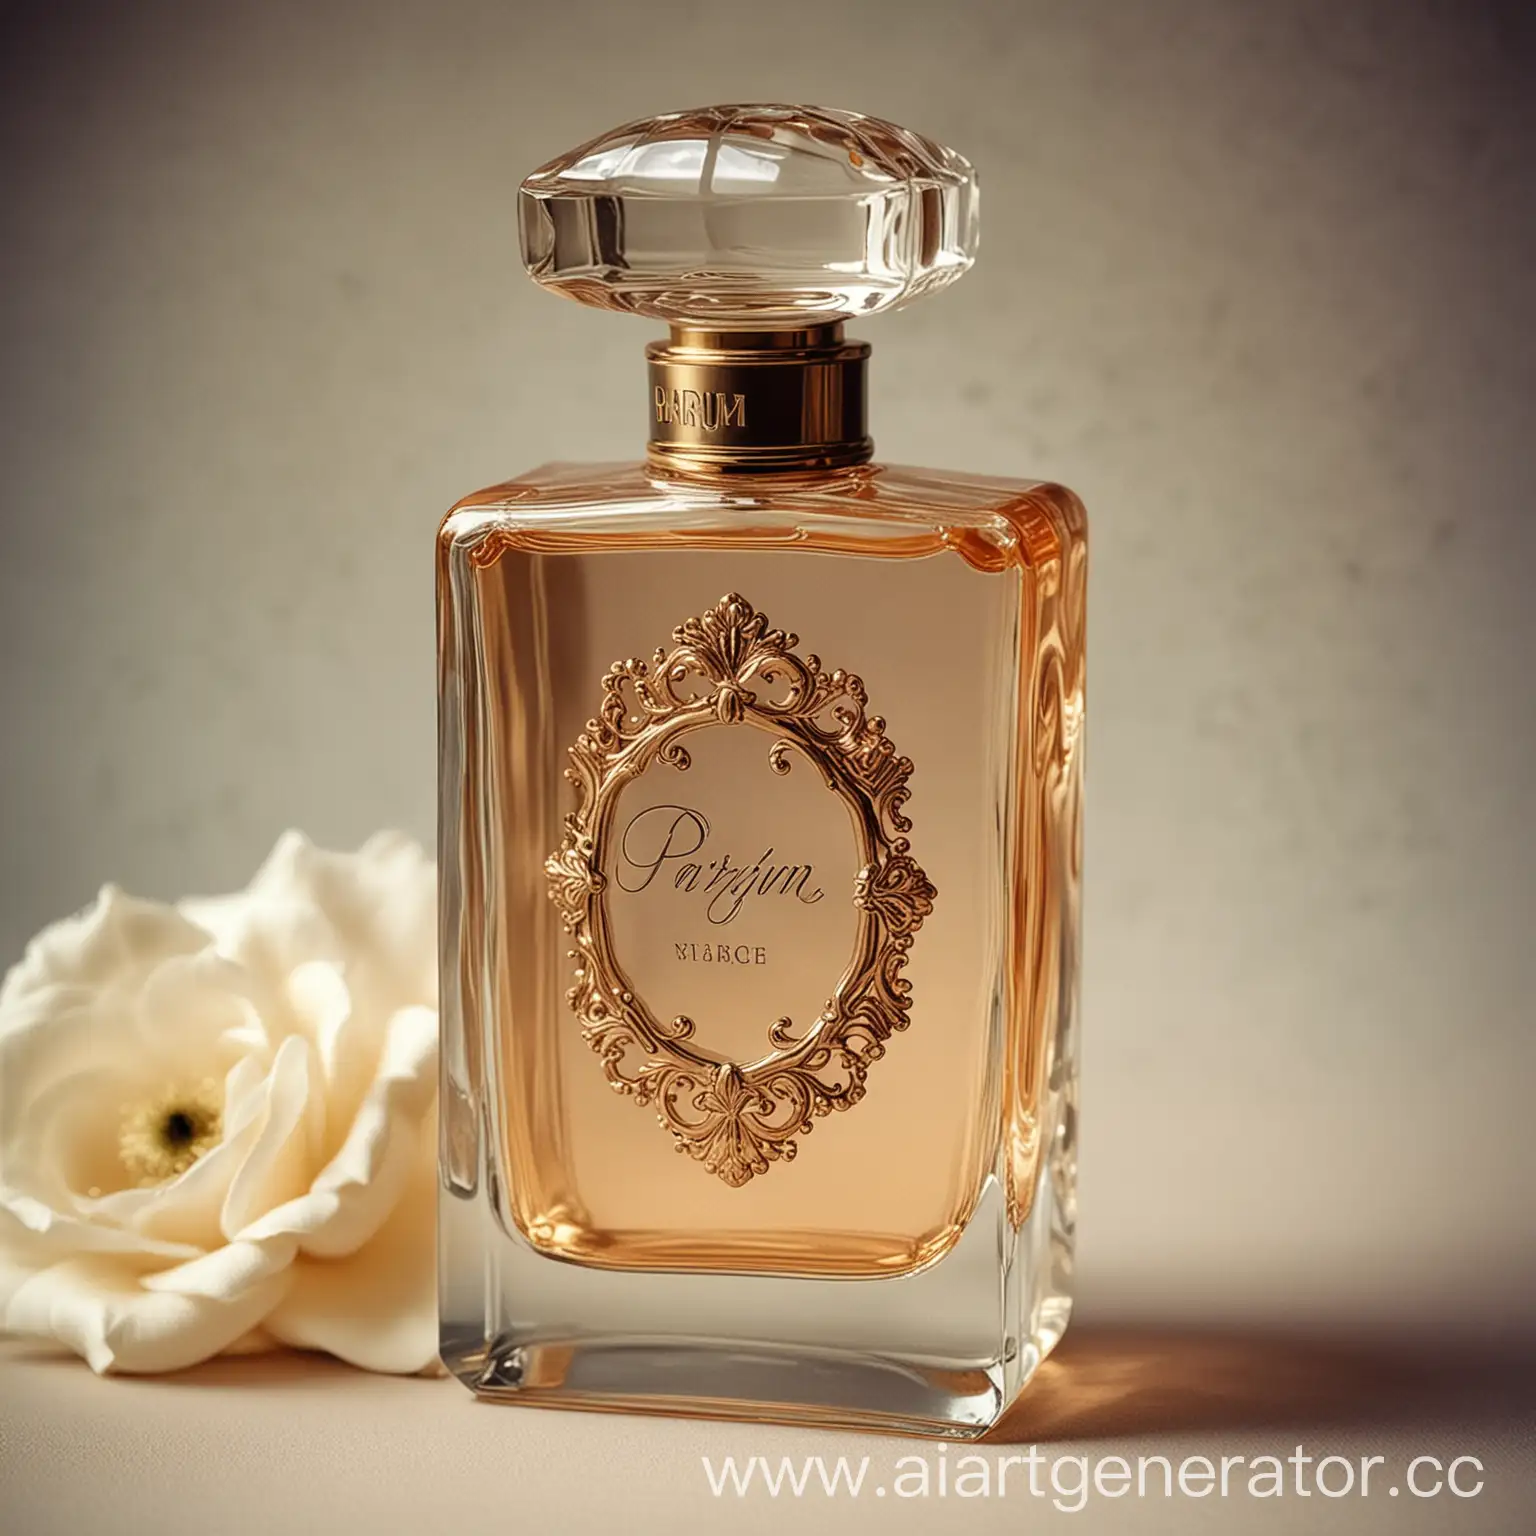 Винтажный флакон парфюма с надписью Parfum Vintage в стиле изысканных фотографий 2000 годов